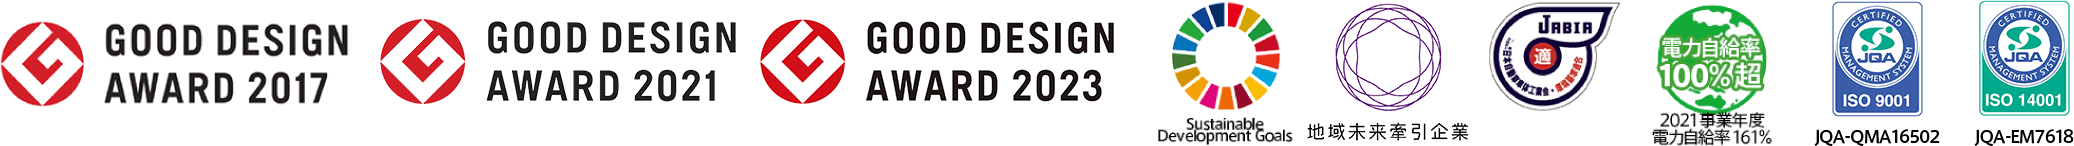 GOOD DESIGN AWARD 2017／GOOD DESIGN AWARD 2021／Sustainable Development Goals／地域未来牽引企業／2021事業年度 電力自給率161%／ISO 9001／ISO 14001